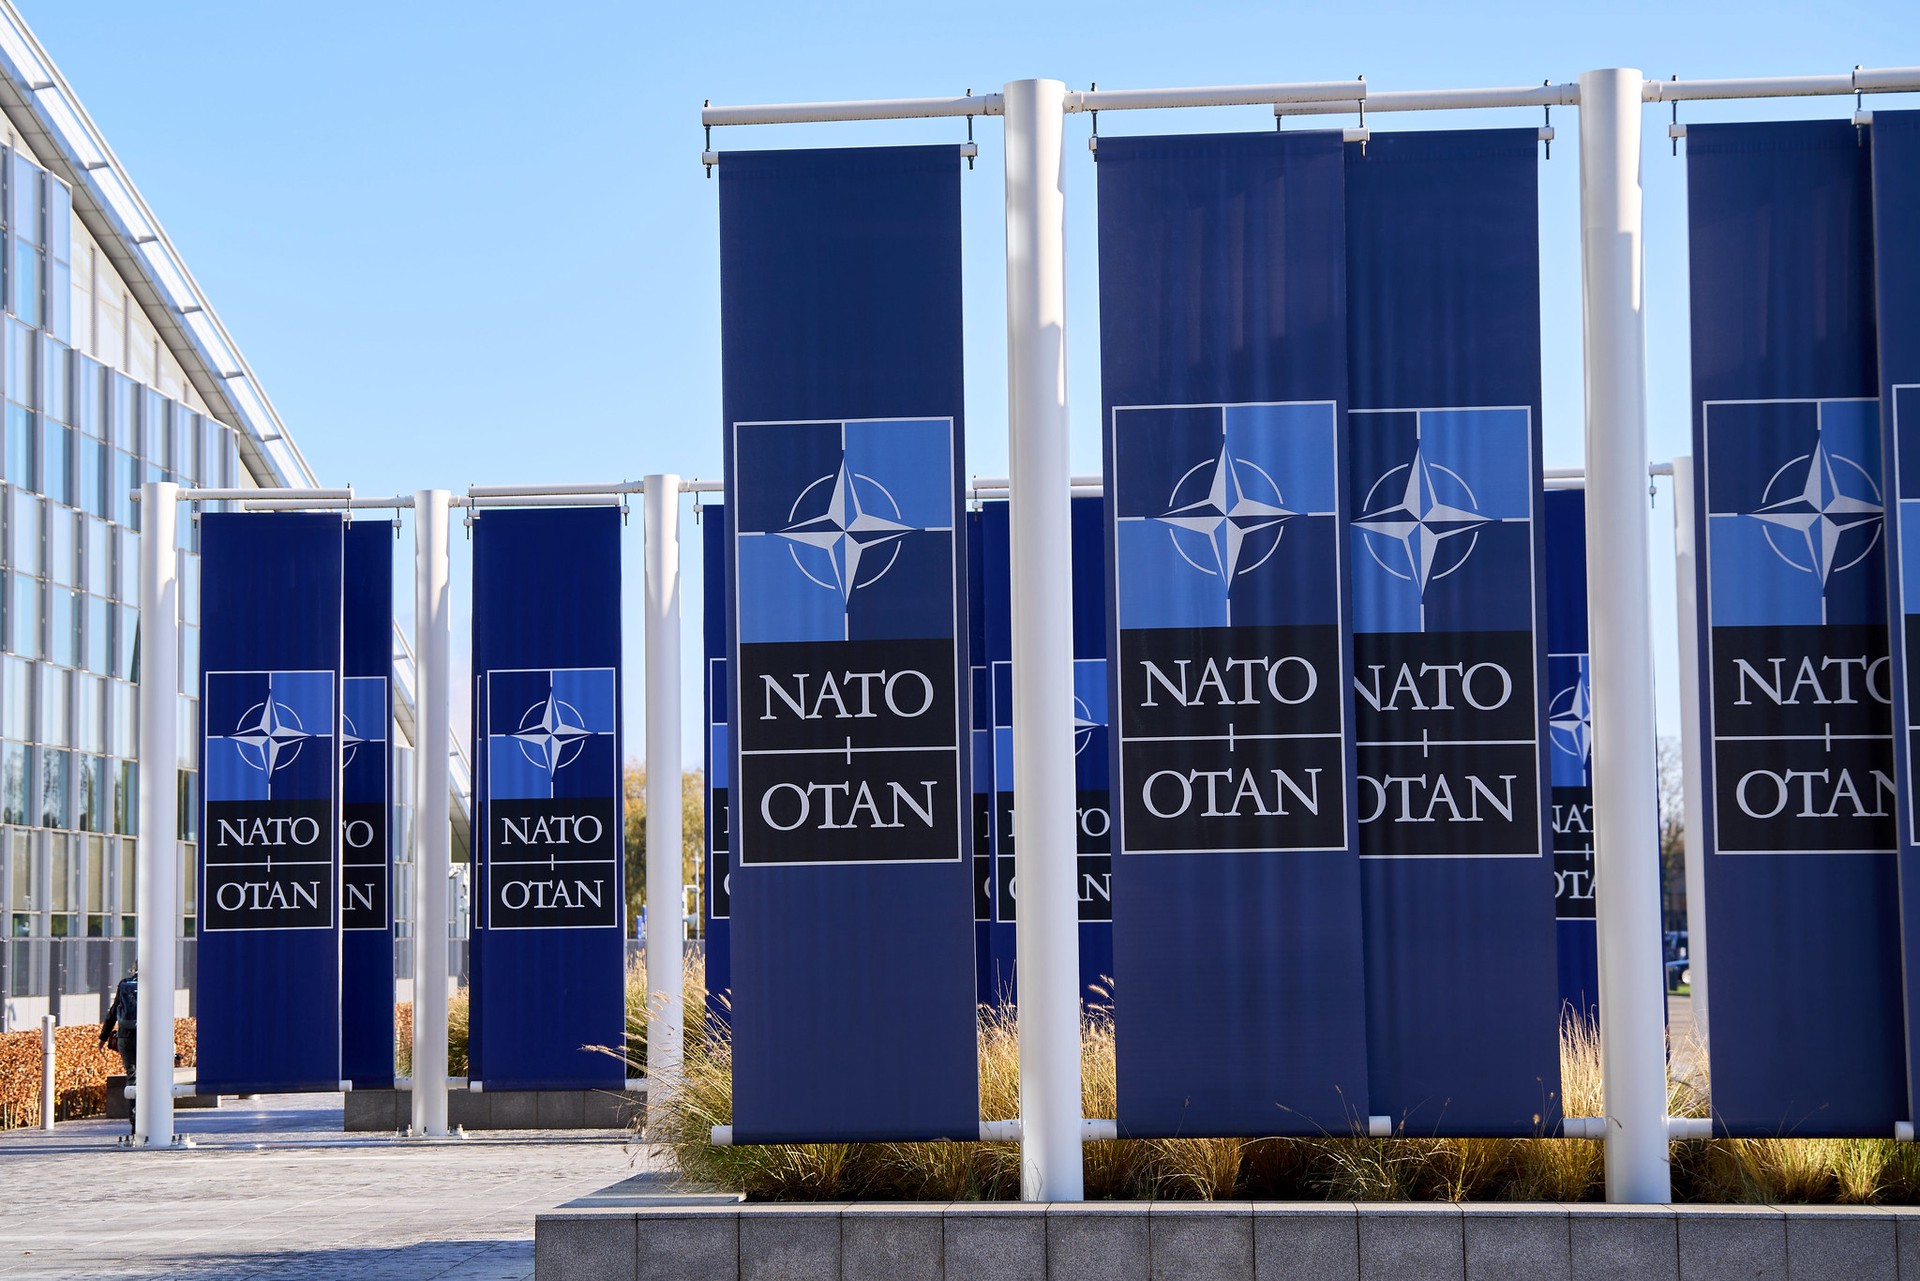 Политолог Михайлов заявил, что России выгодны политические и военные промахи стран НАТО